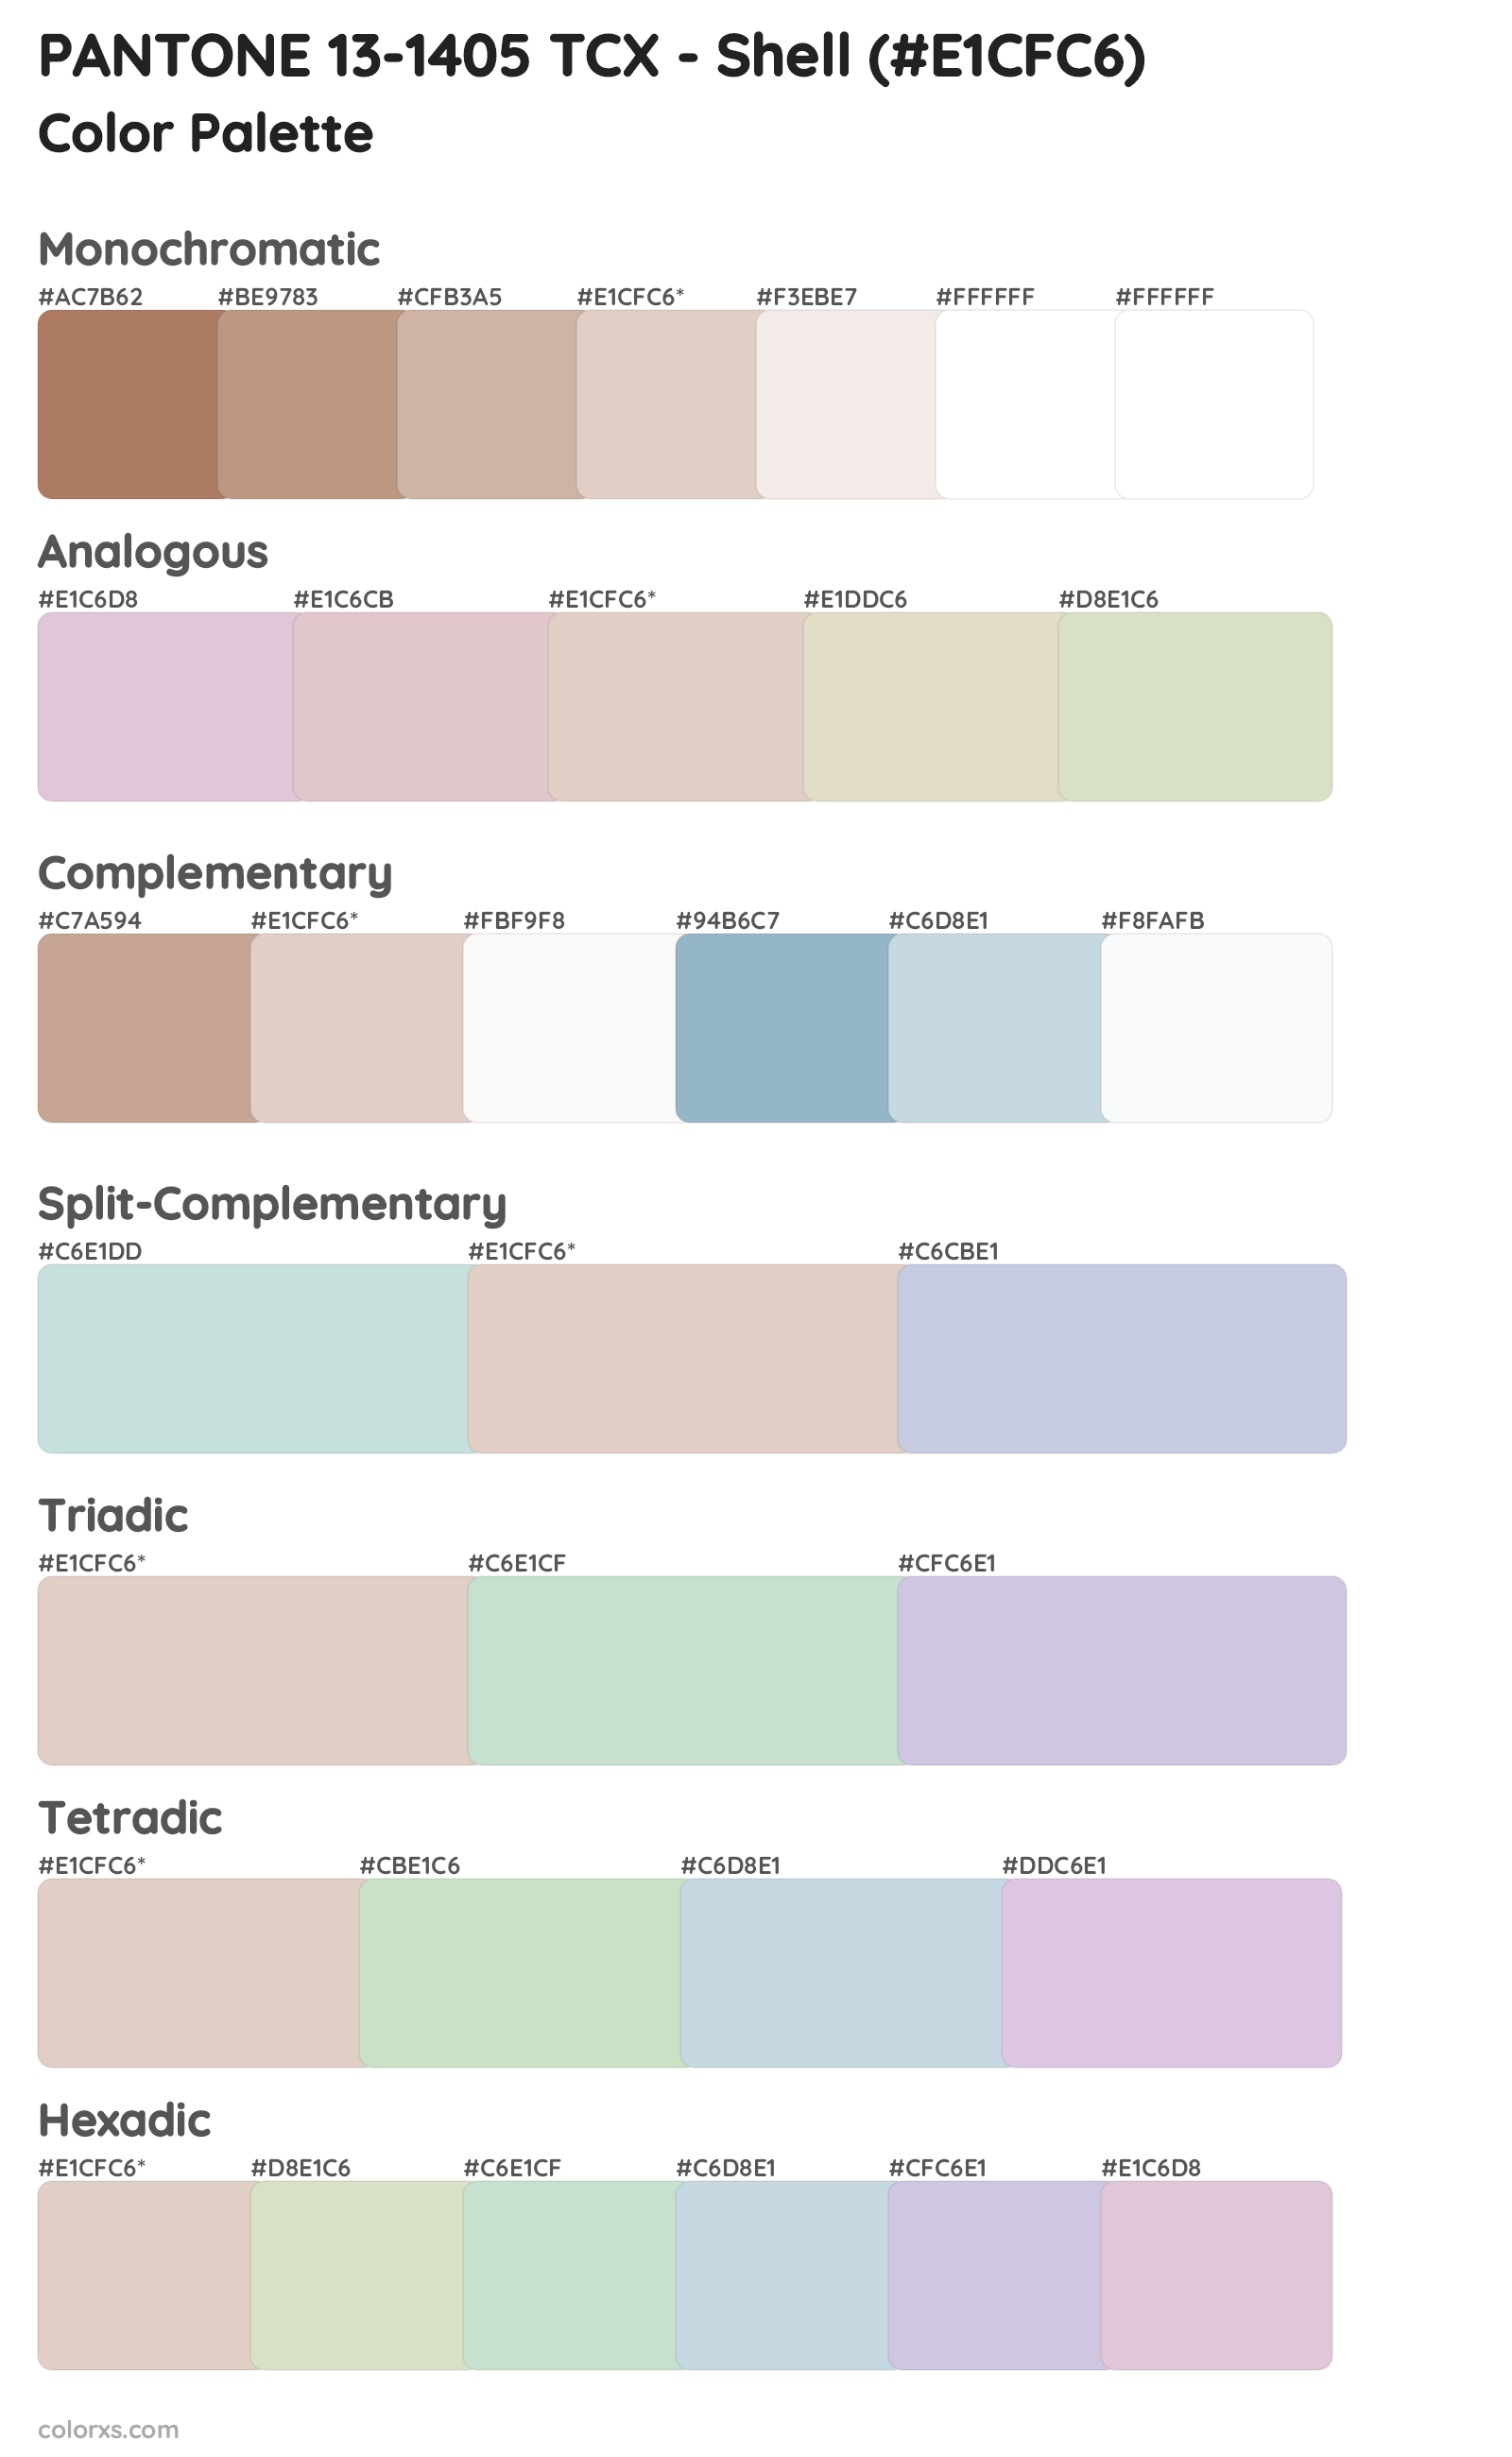 PANTONE 13-1405 TCX - Shell Color Scheme Palettes